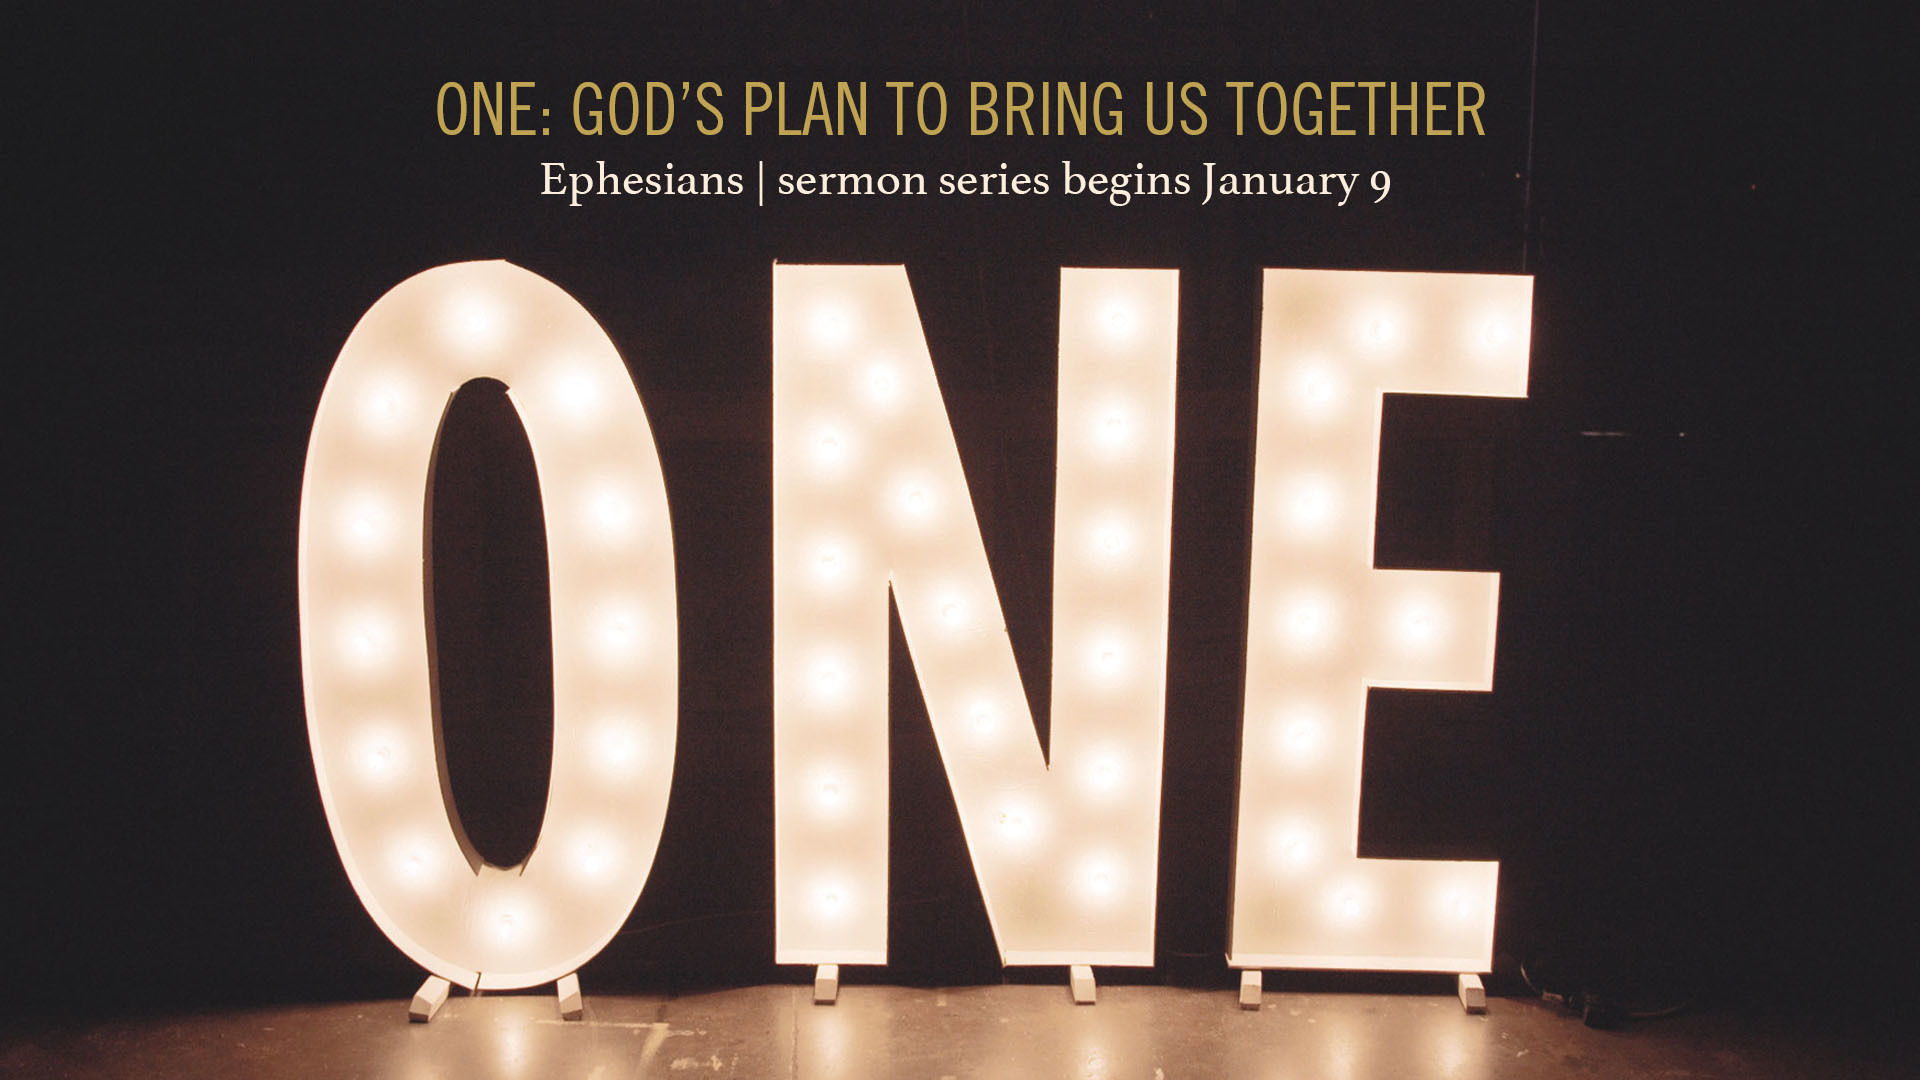 One: Ephesians